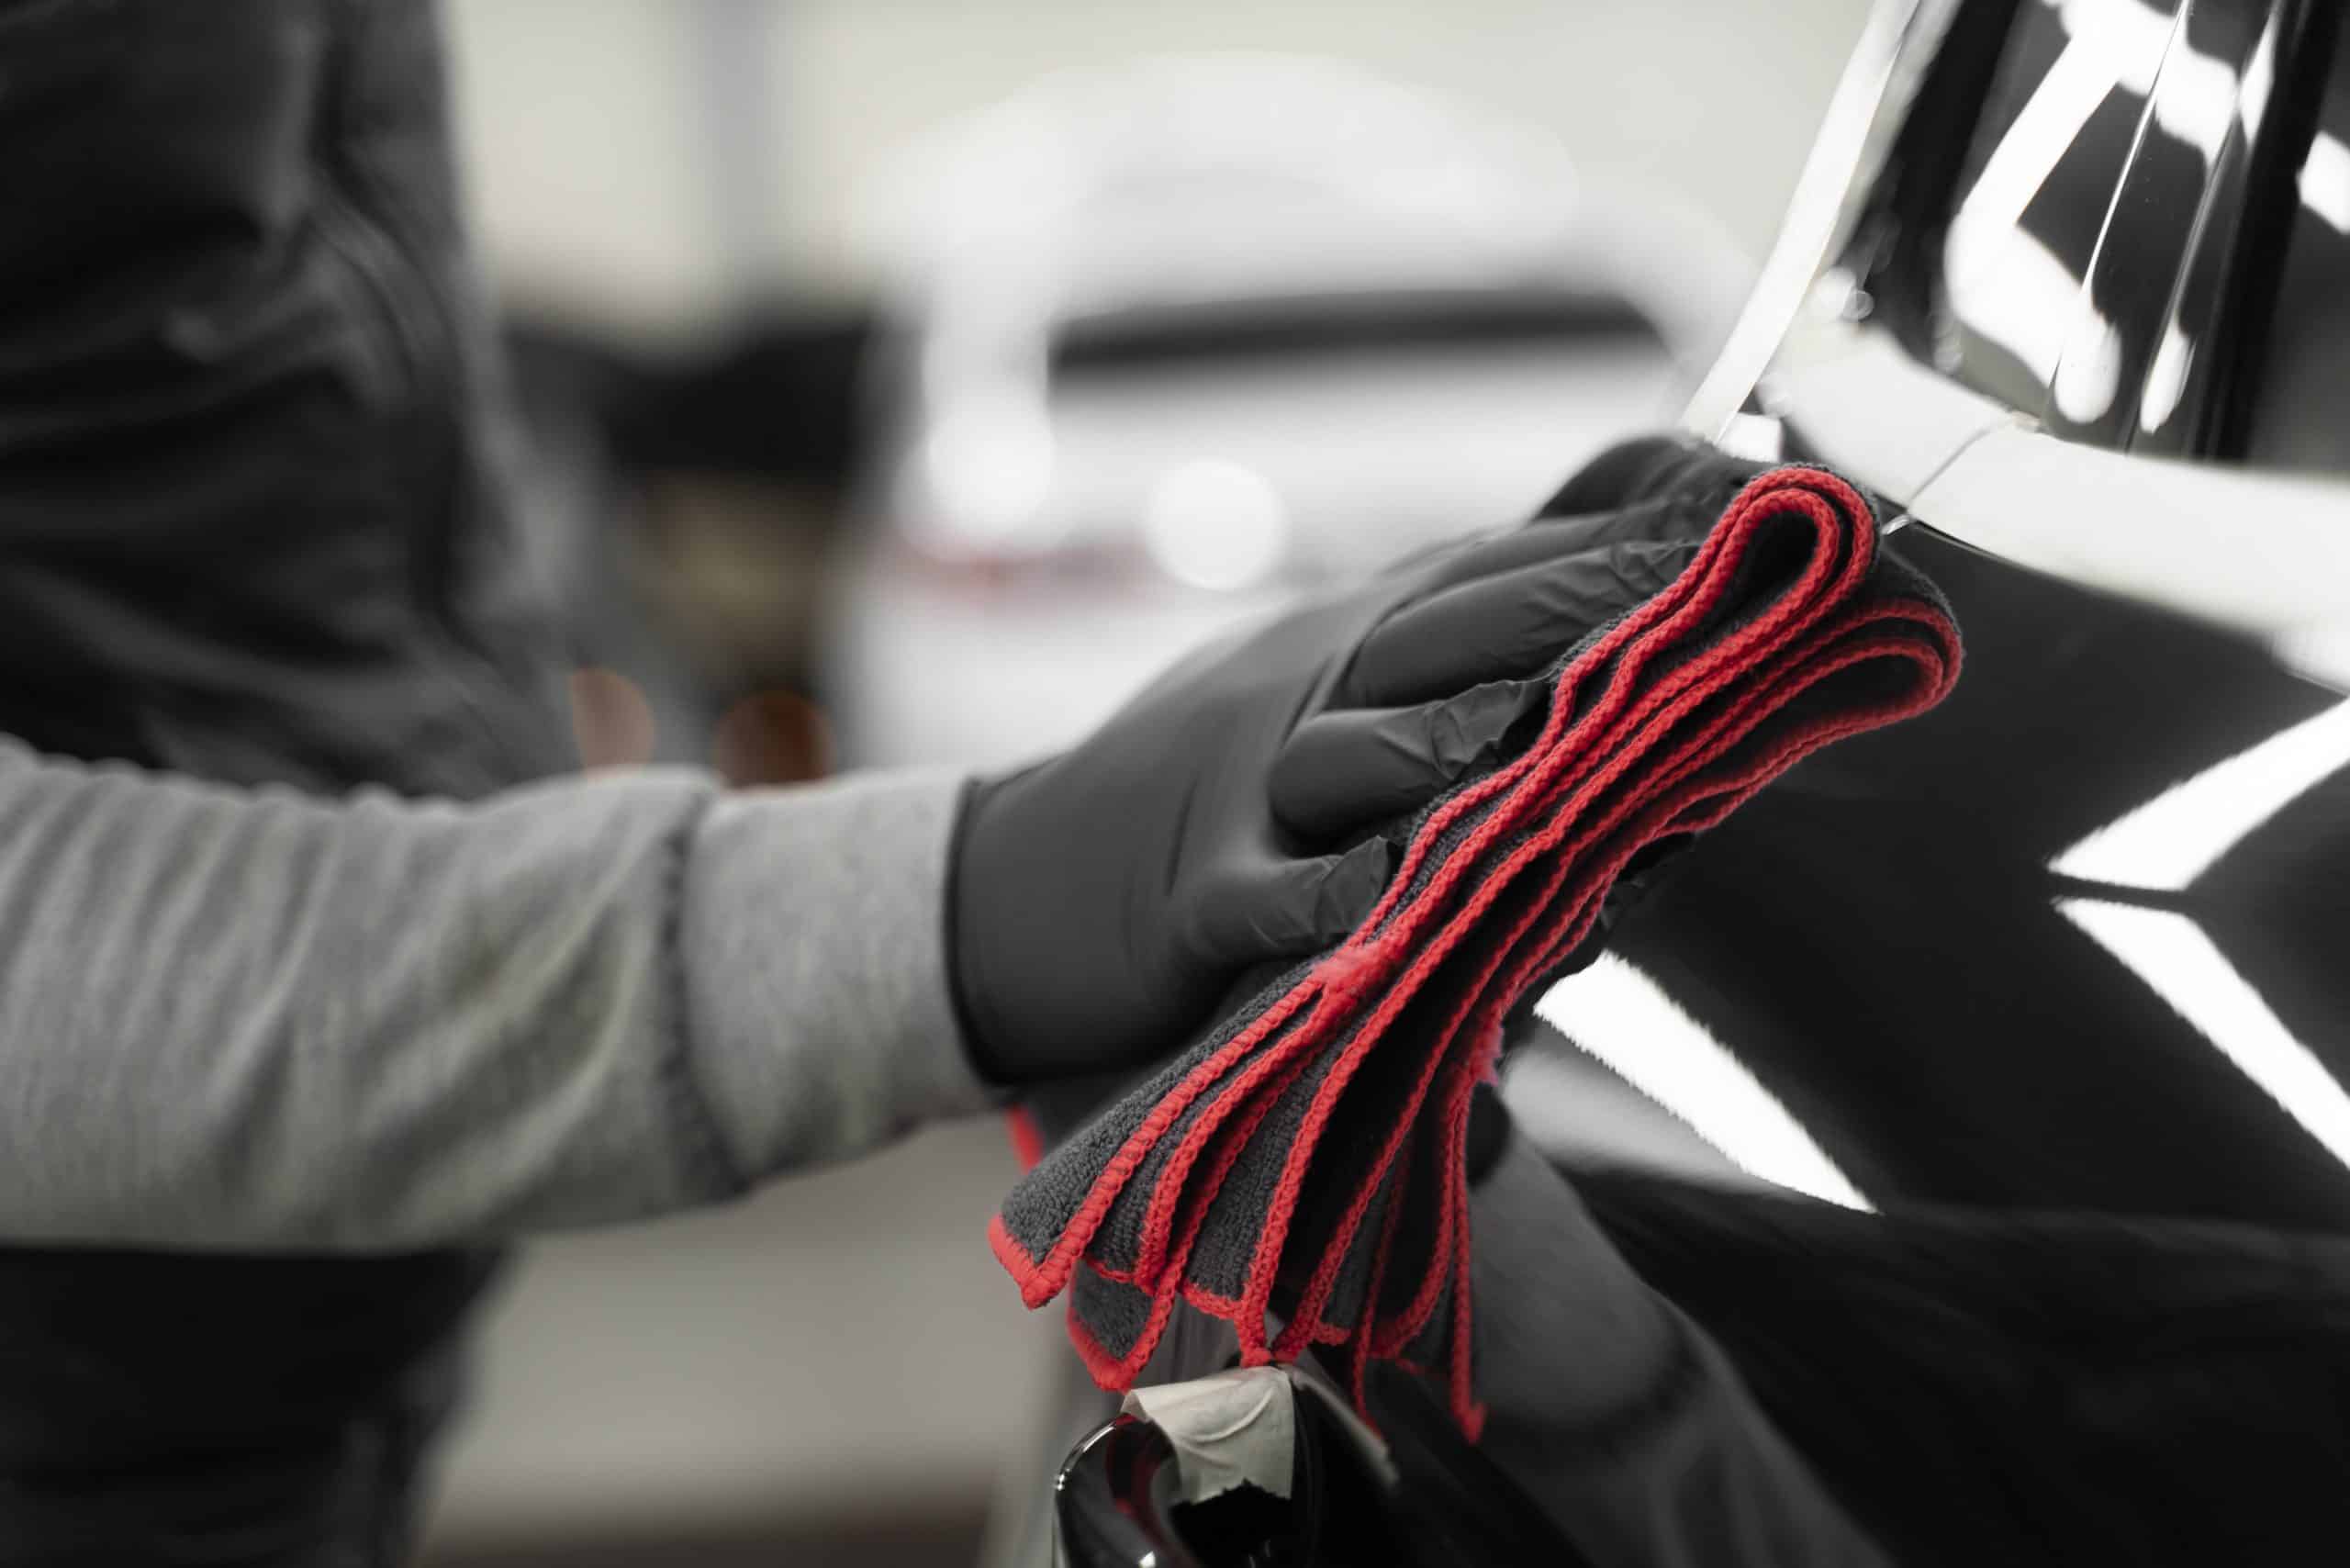 Entretien et nettoyage d'une voiture : la microfibre pour un résultat sans  rayures